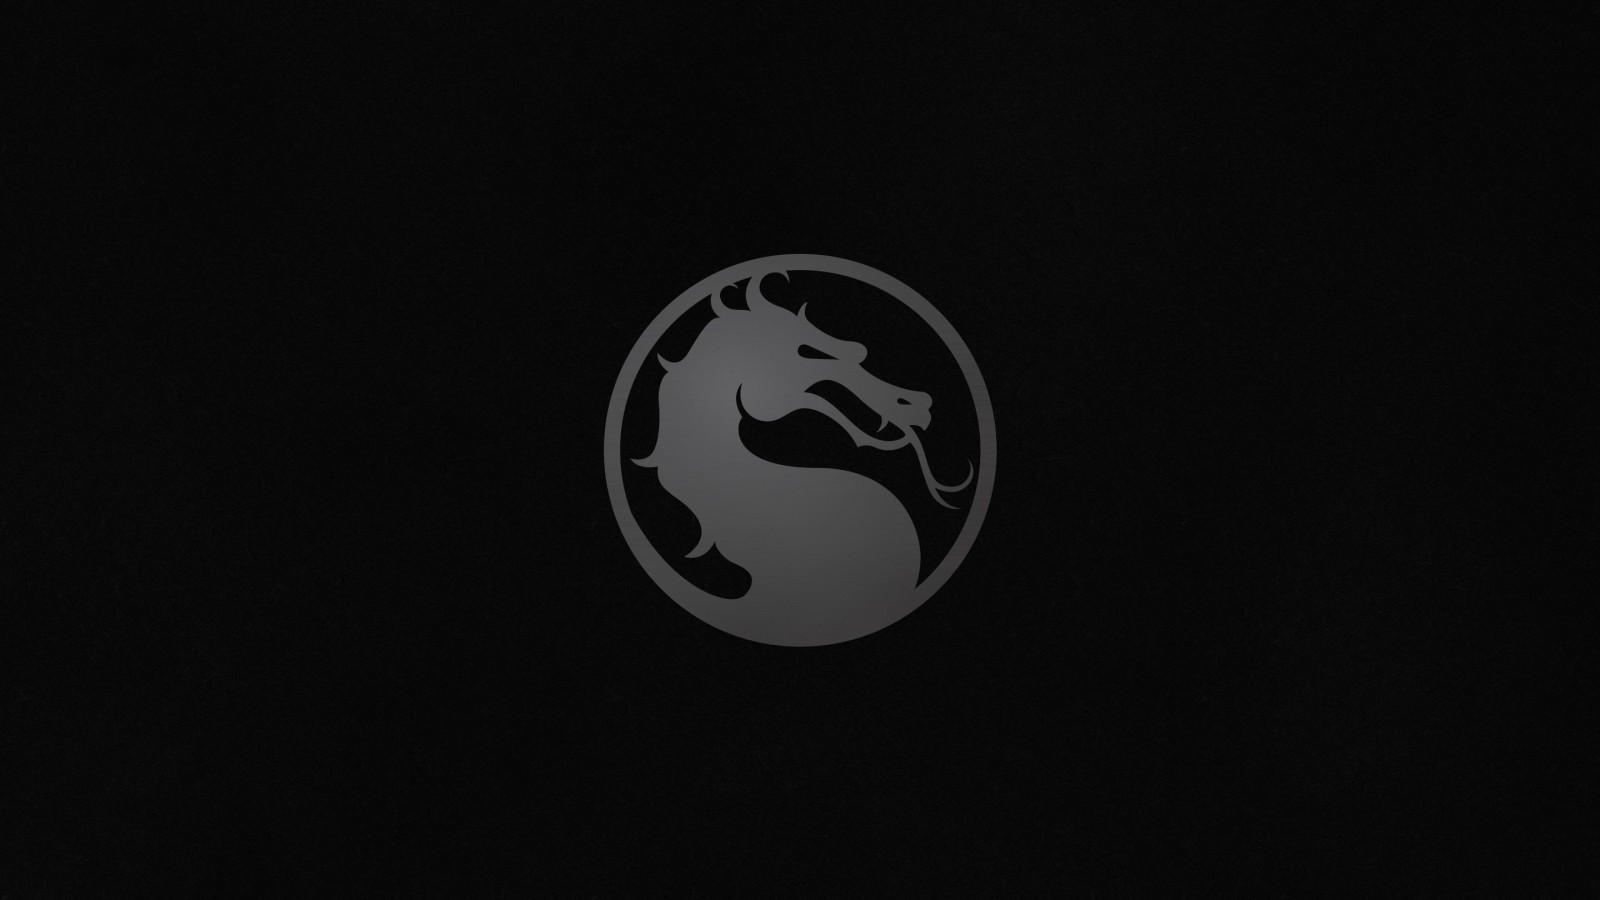 Mortal Kombat X Logo Wallpaper for Desktop 1600x900